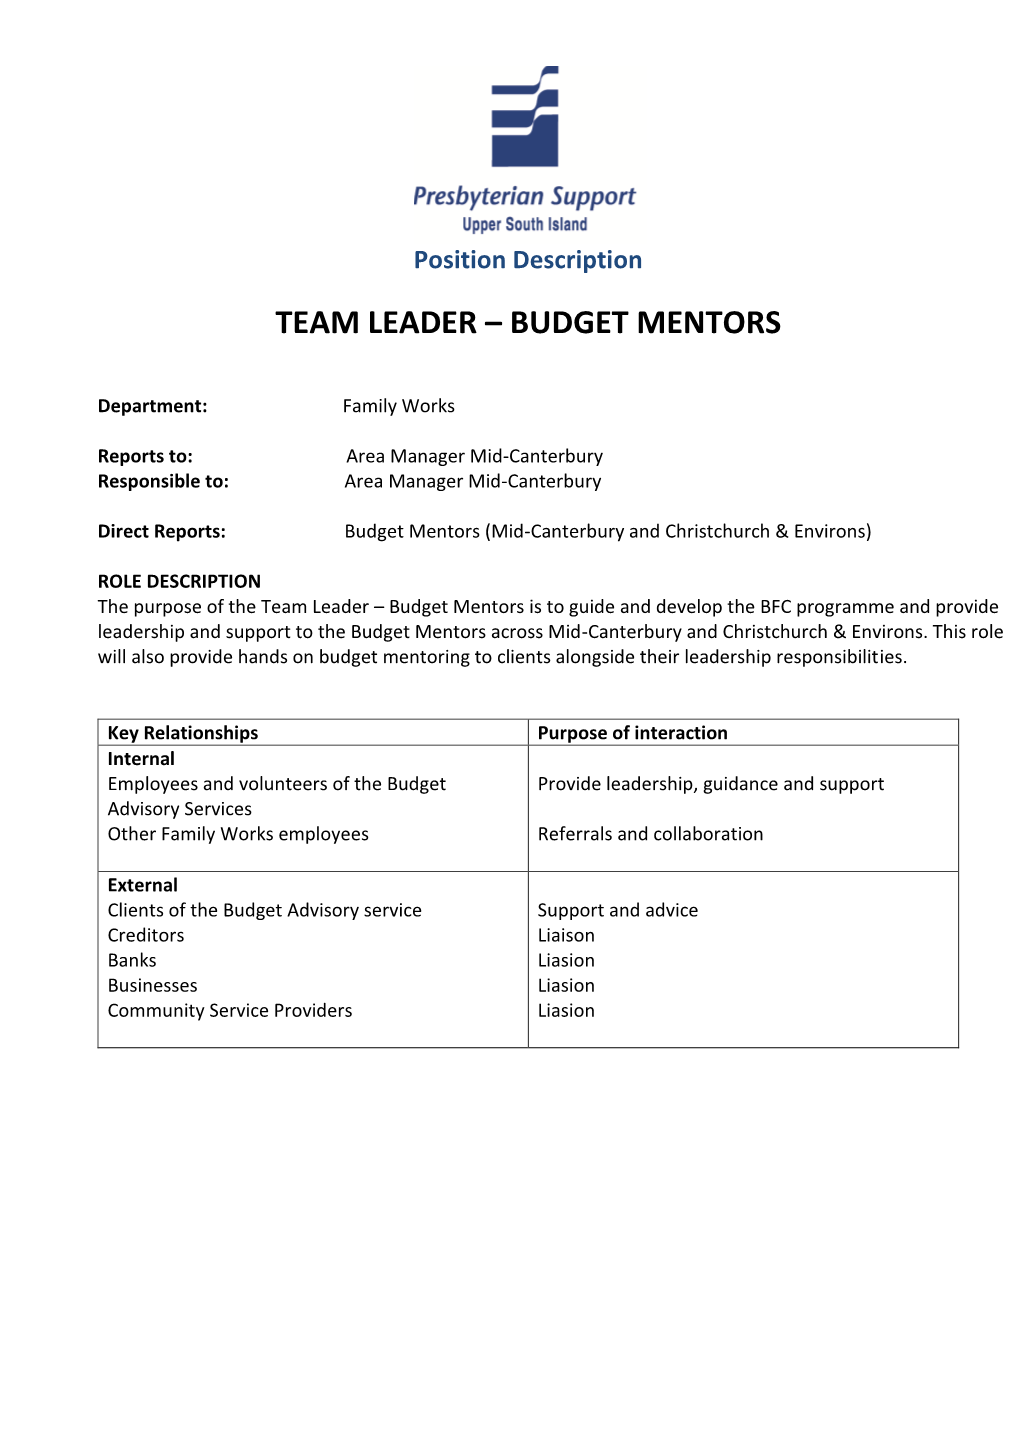 Team Leader – Budget Mentors